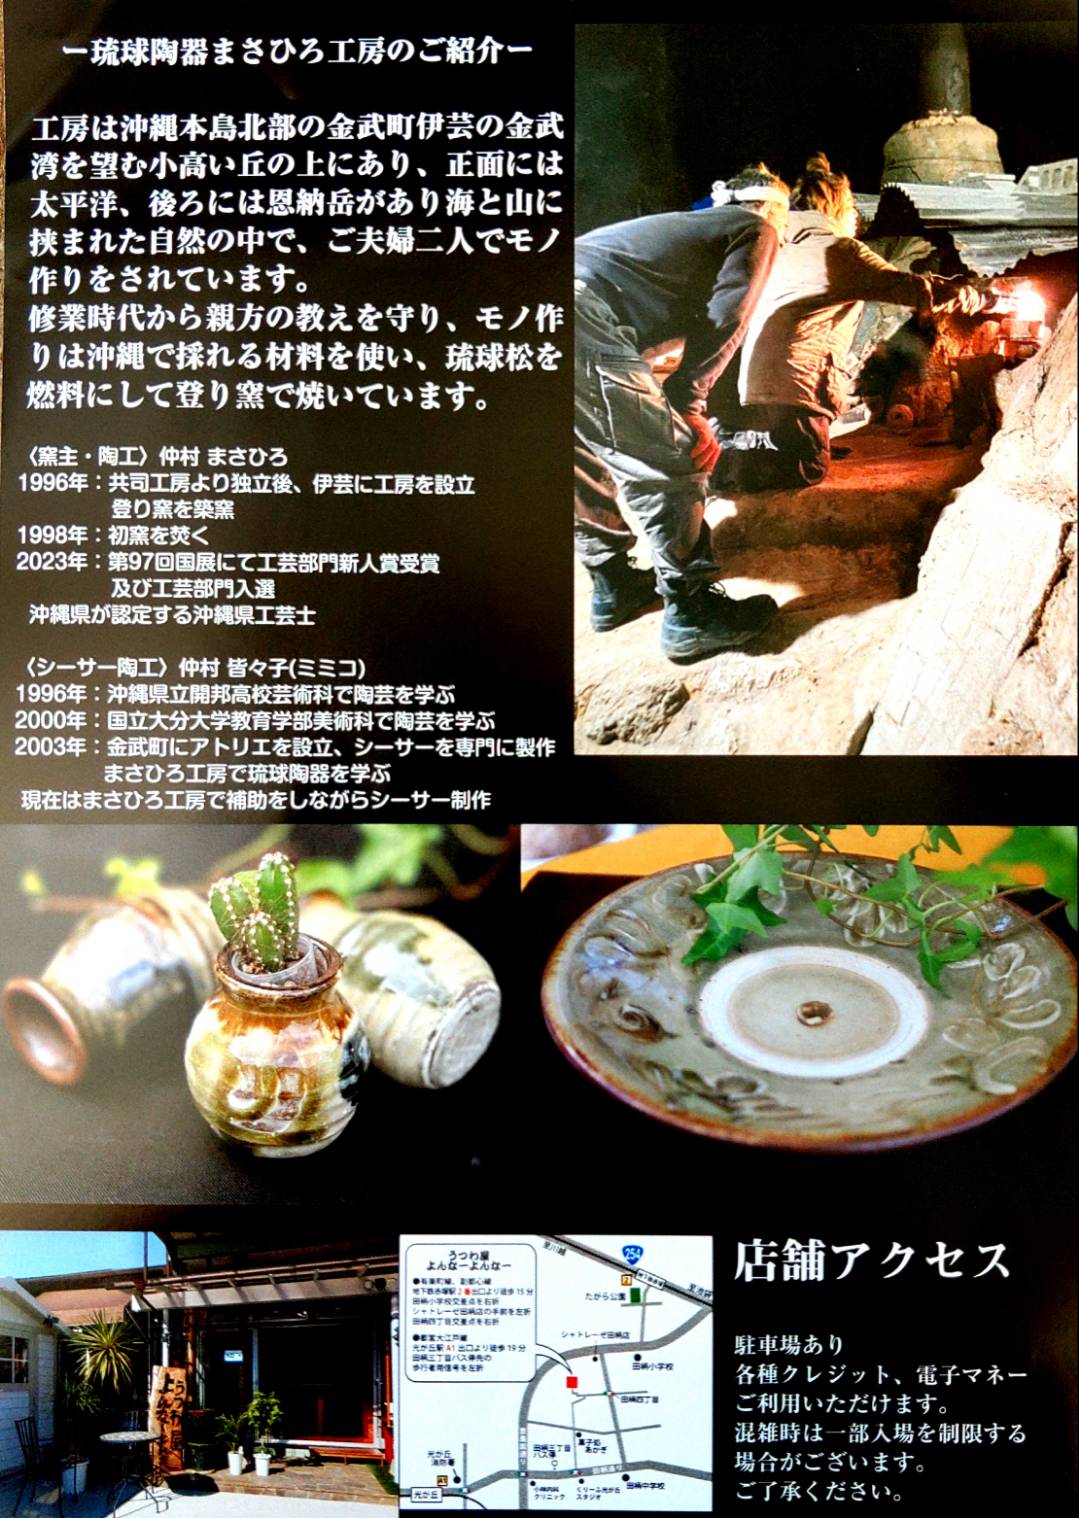 2023/10/28~11/1 初の展示会 『琉球陶器 まさひろ工房展』開催のお知らせ